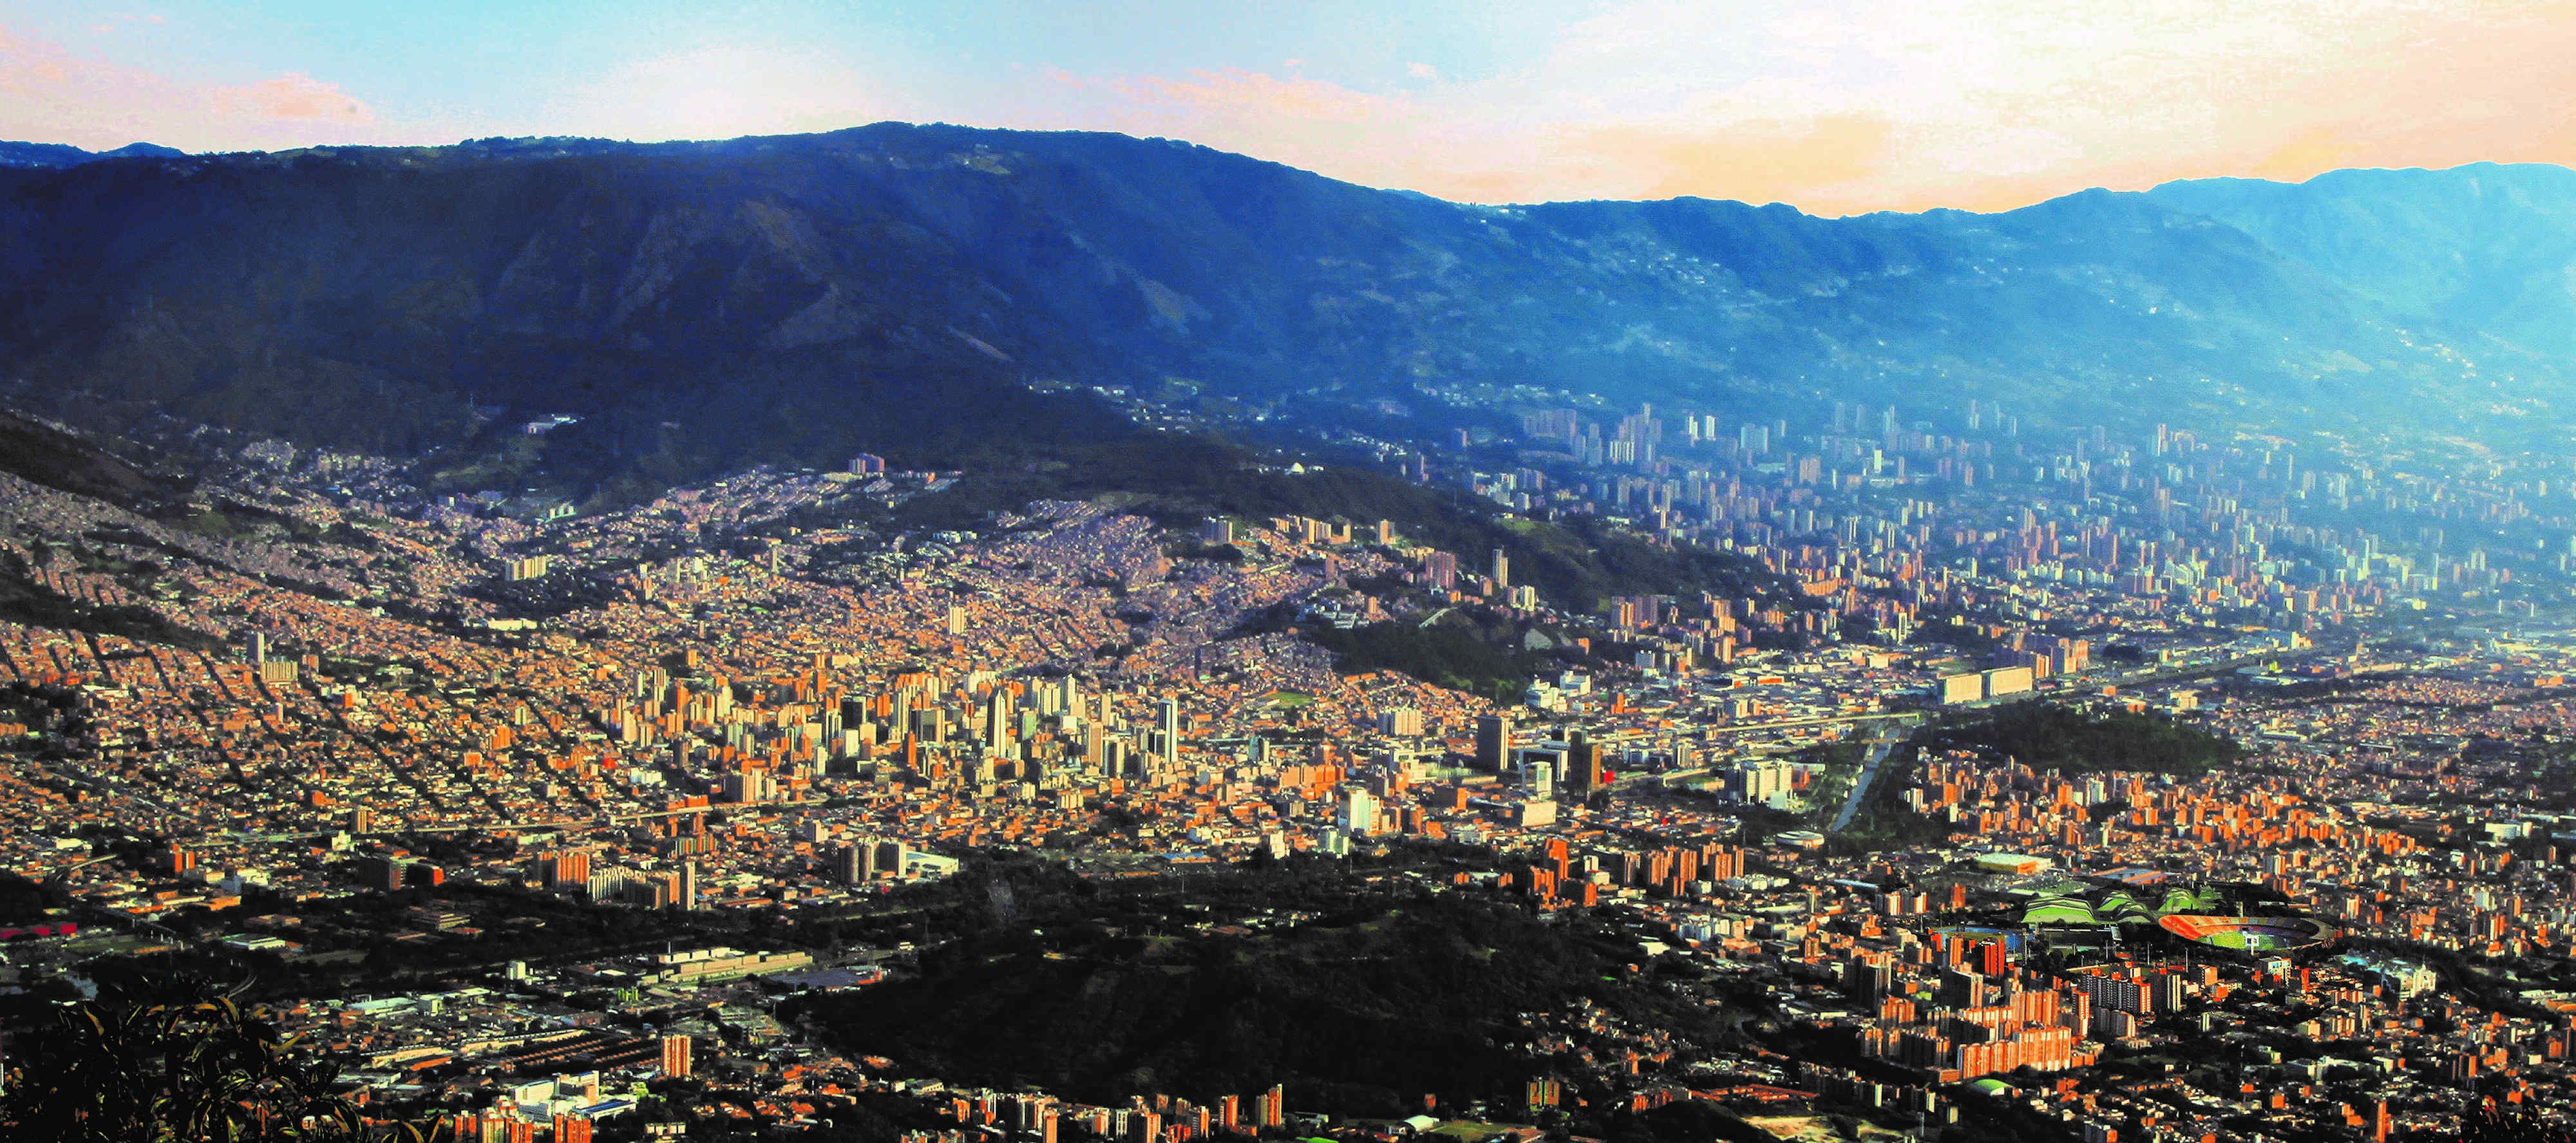 El PEMOT, una herramienta que pretende ser definitiva para la correcta planificación urbana del área metropolitana de Medellín